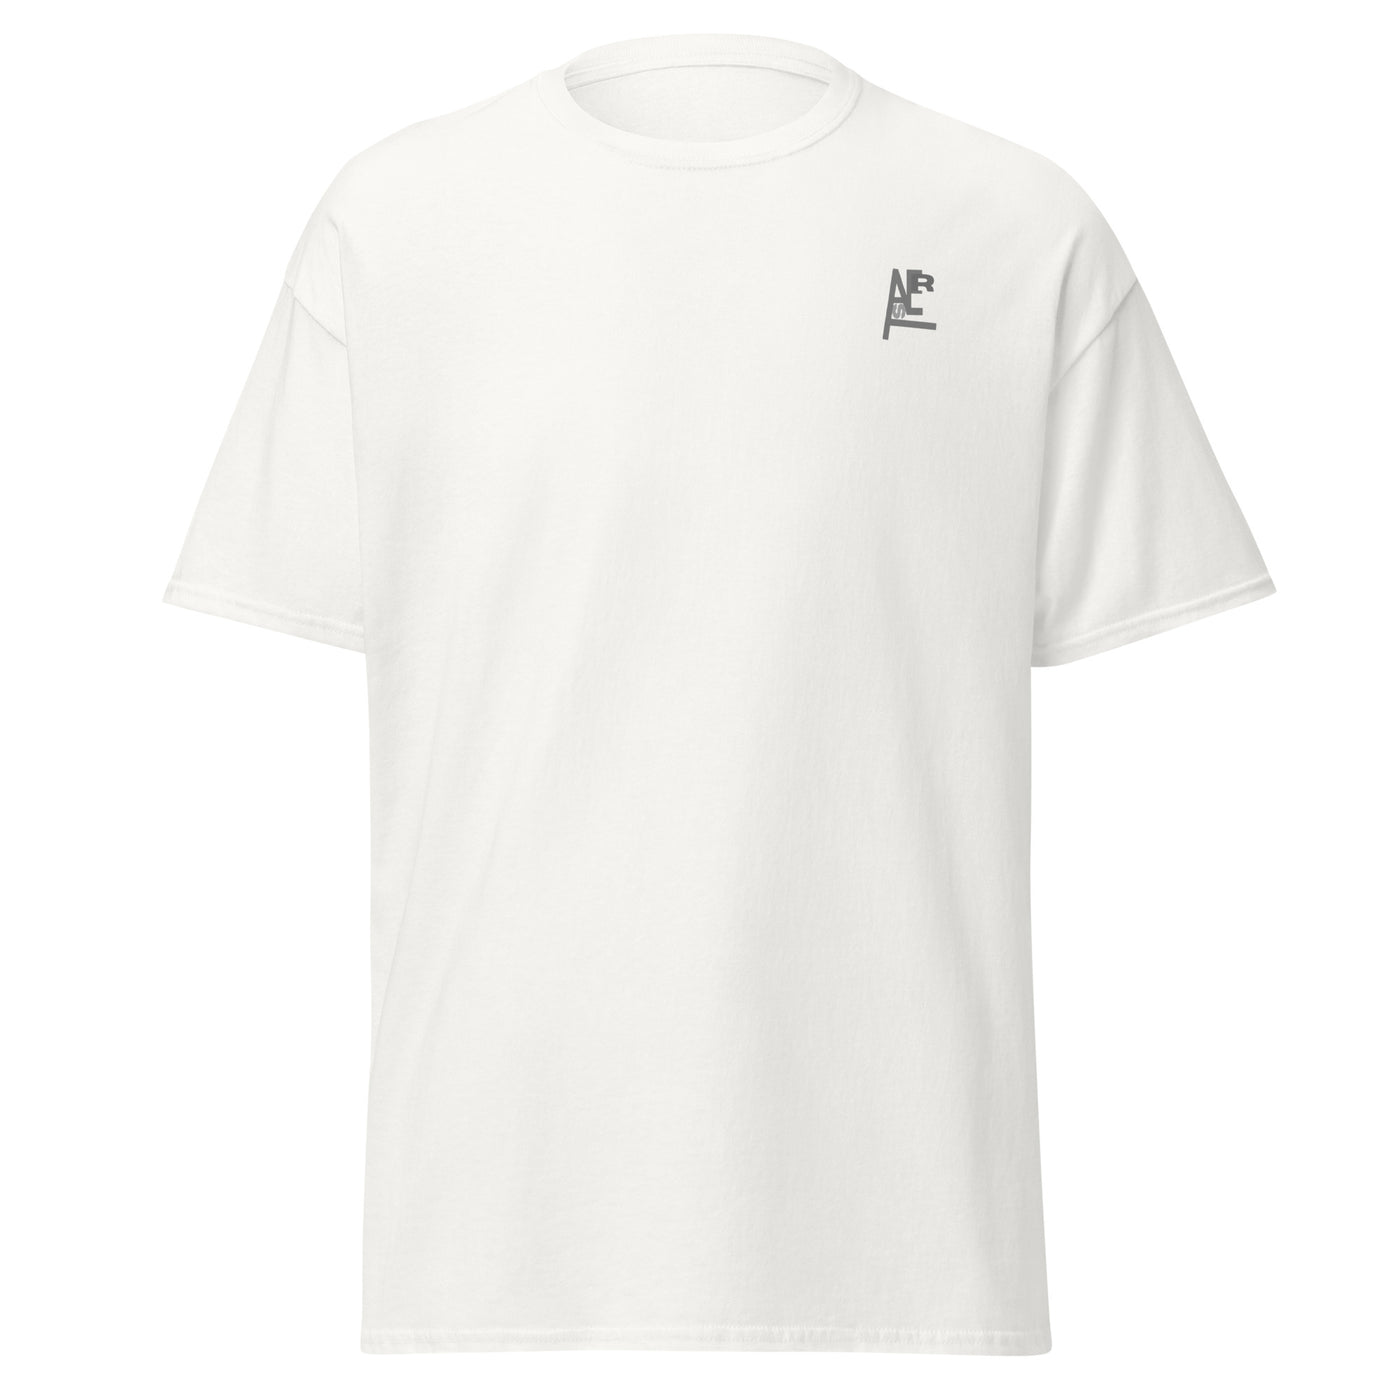 @AsertGGs Unisex T-Shirt white front